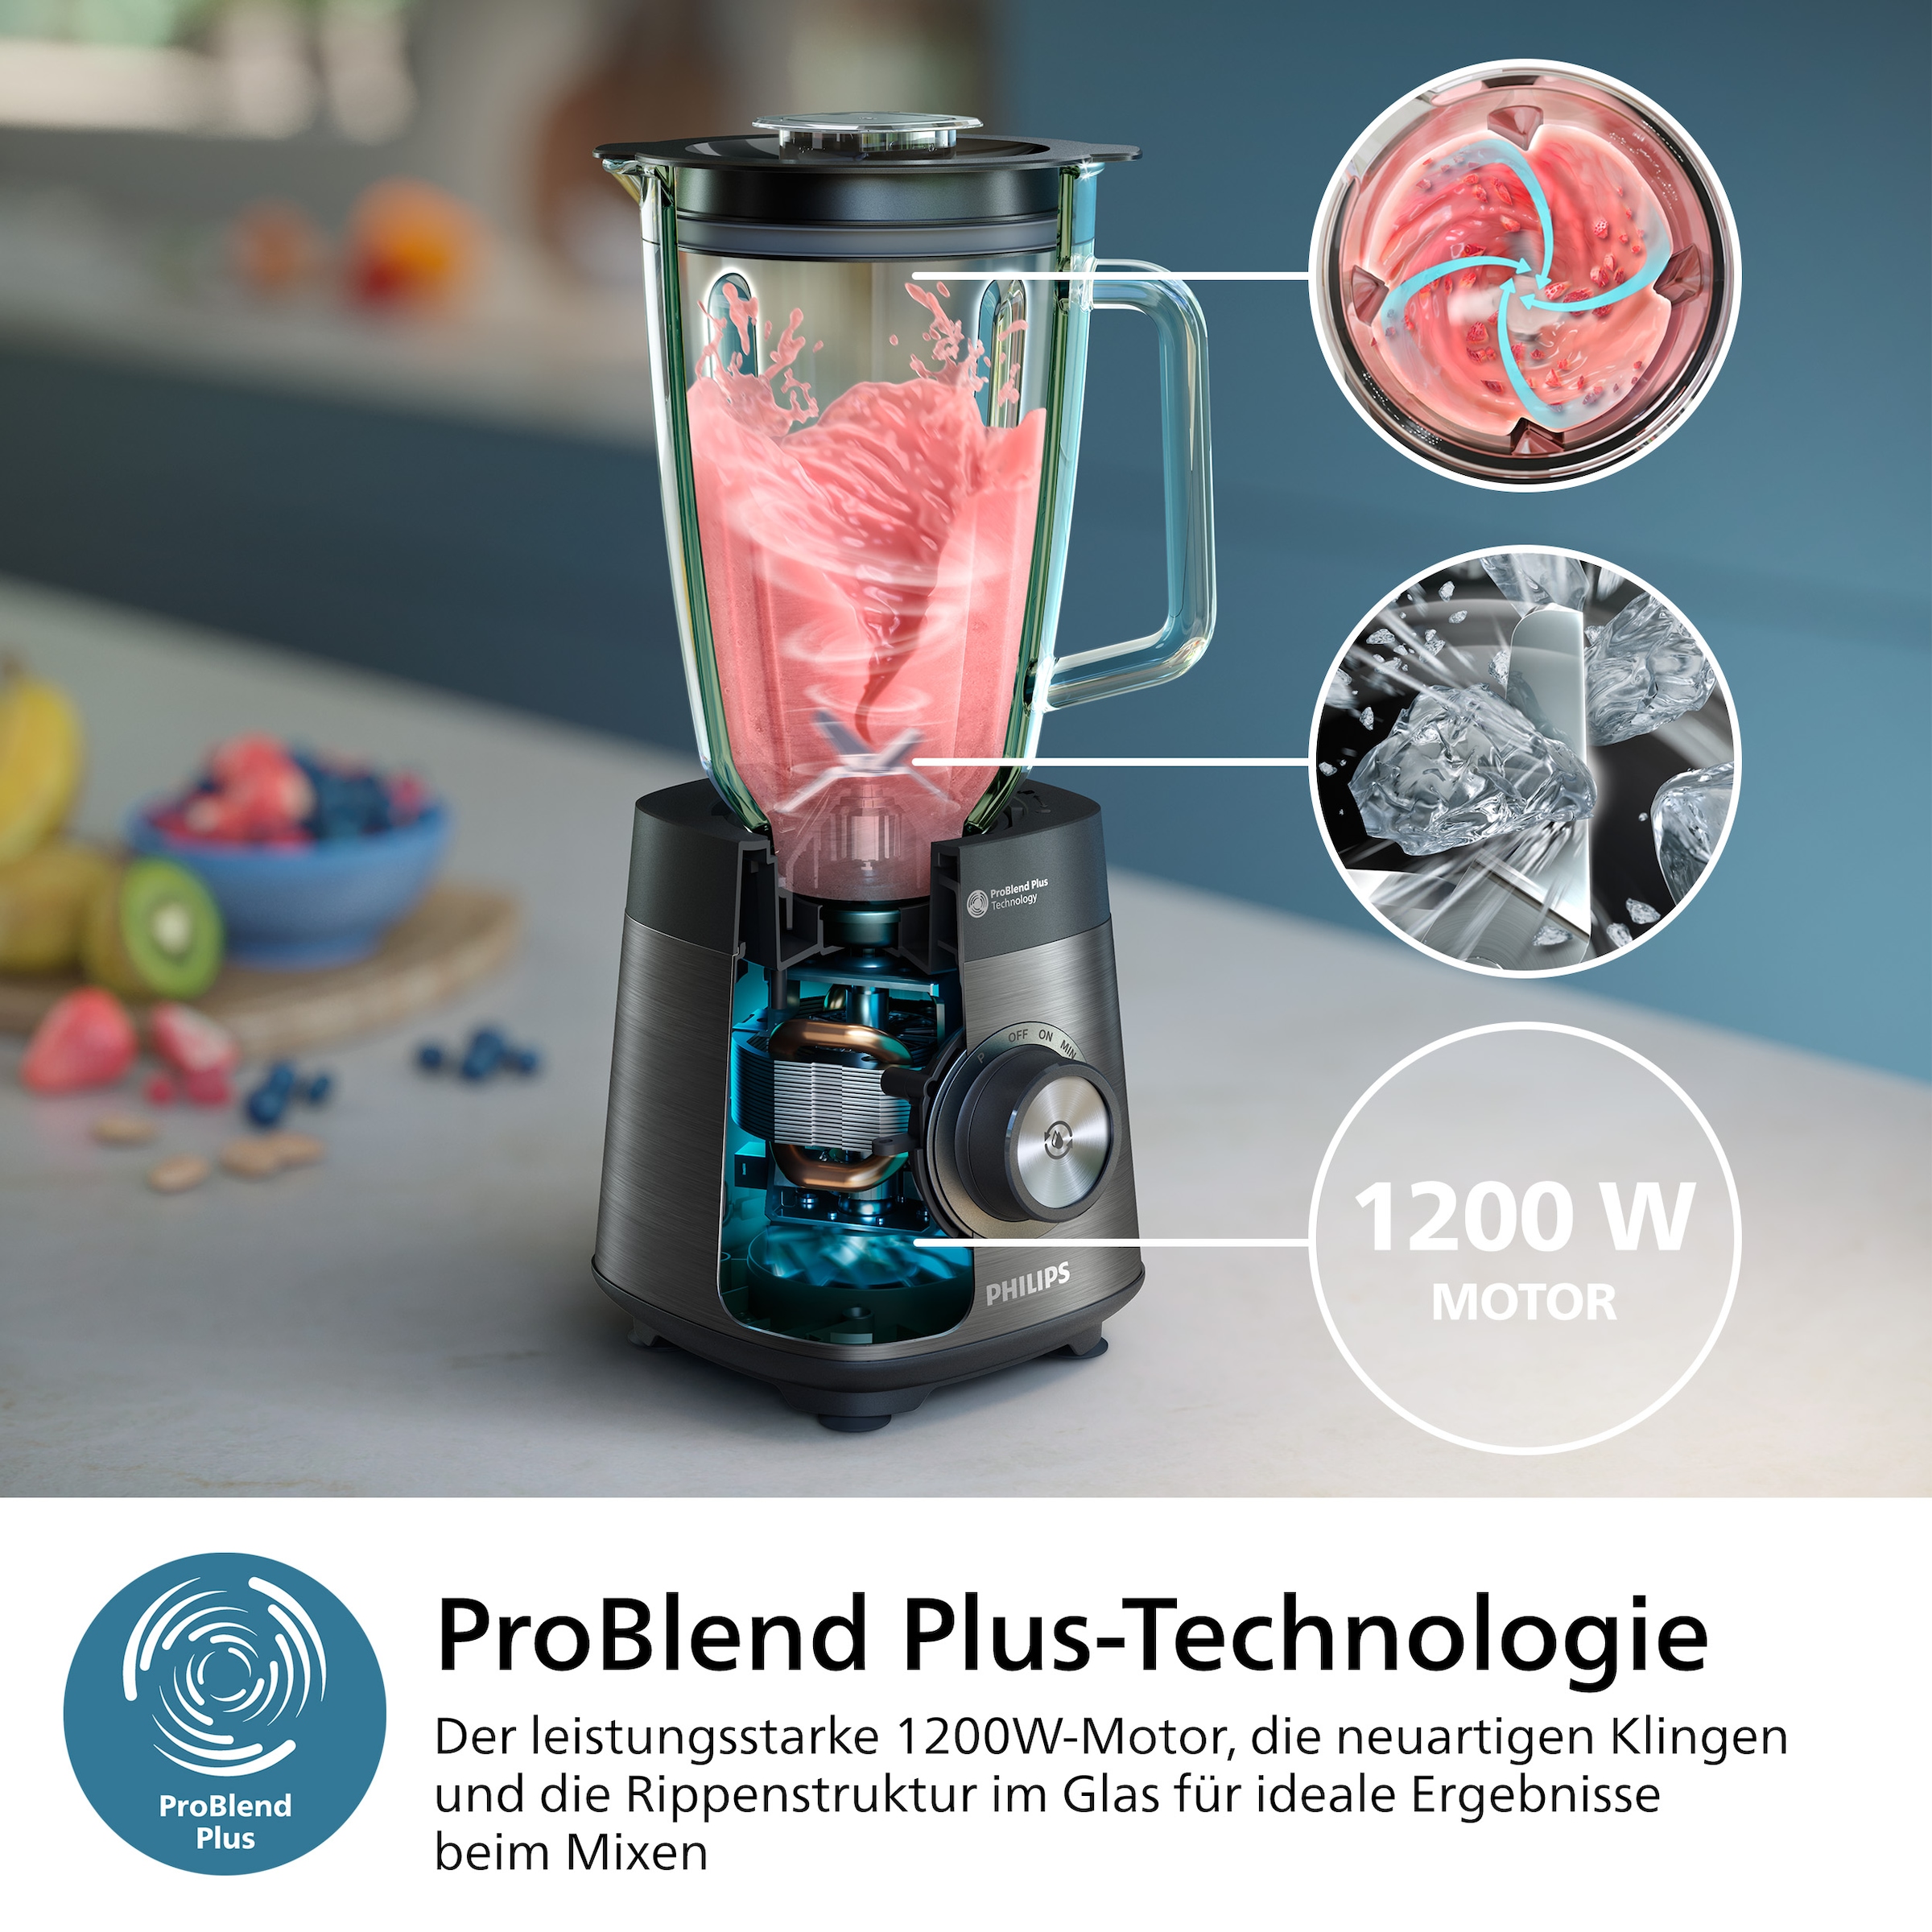 Philips Standmixer »HR3040/00 5000 Series, mit ProBlend Plus-Technologie,«, 1200 W, 2-Liter-Behälter und automatischer Reinigung; Edelstahl/Grau